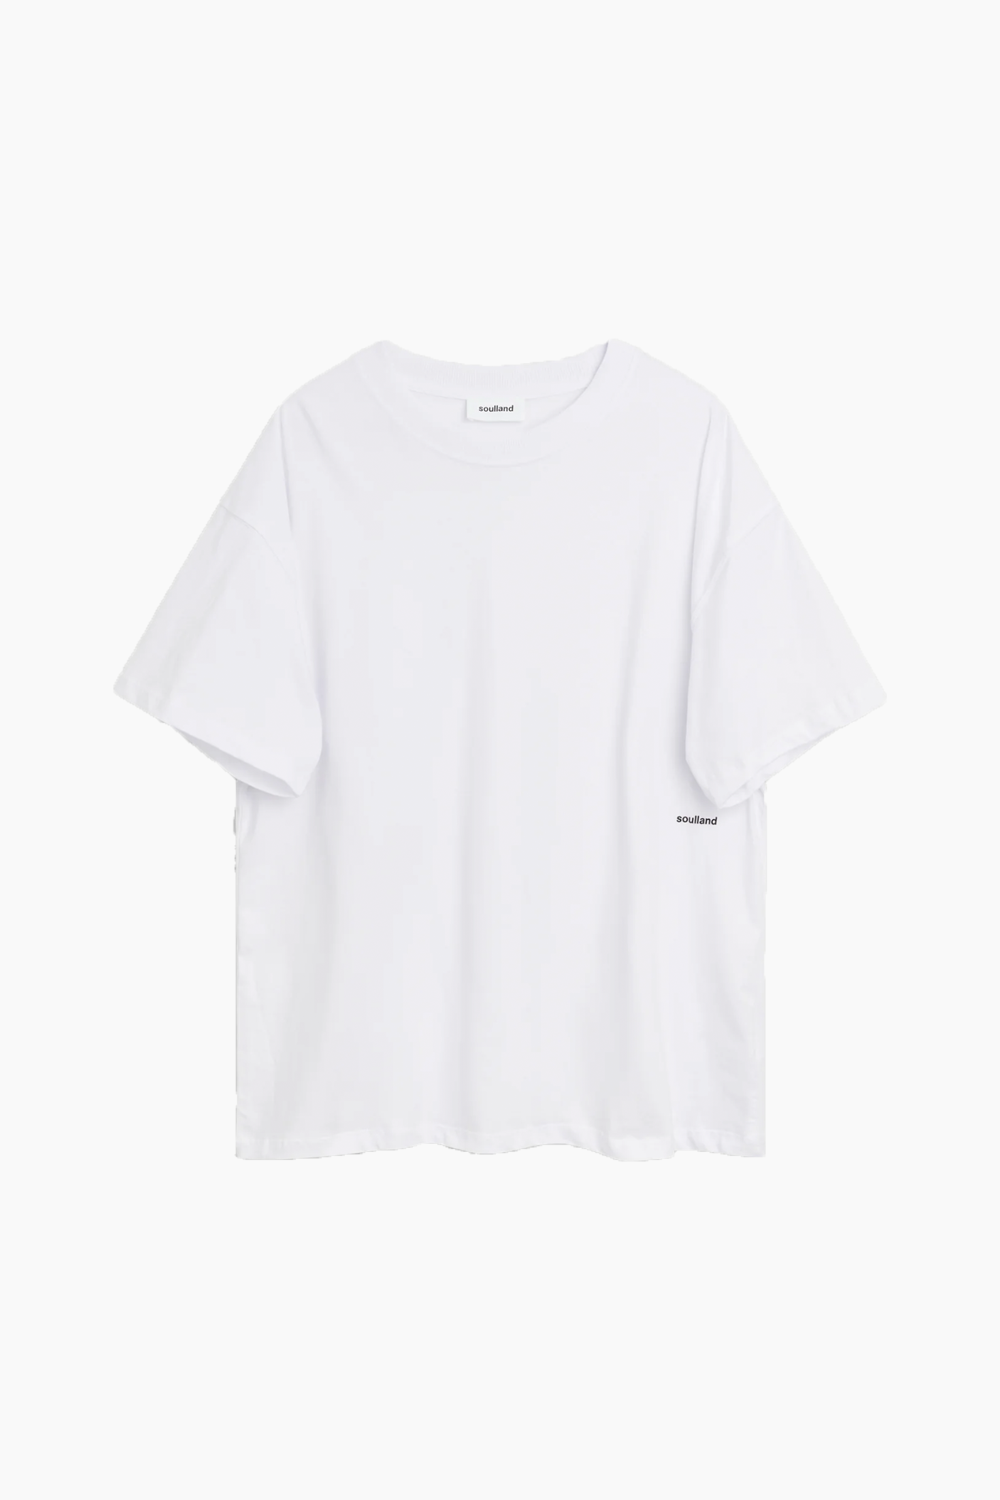 Ash T-shirt - White - Soulland